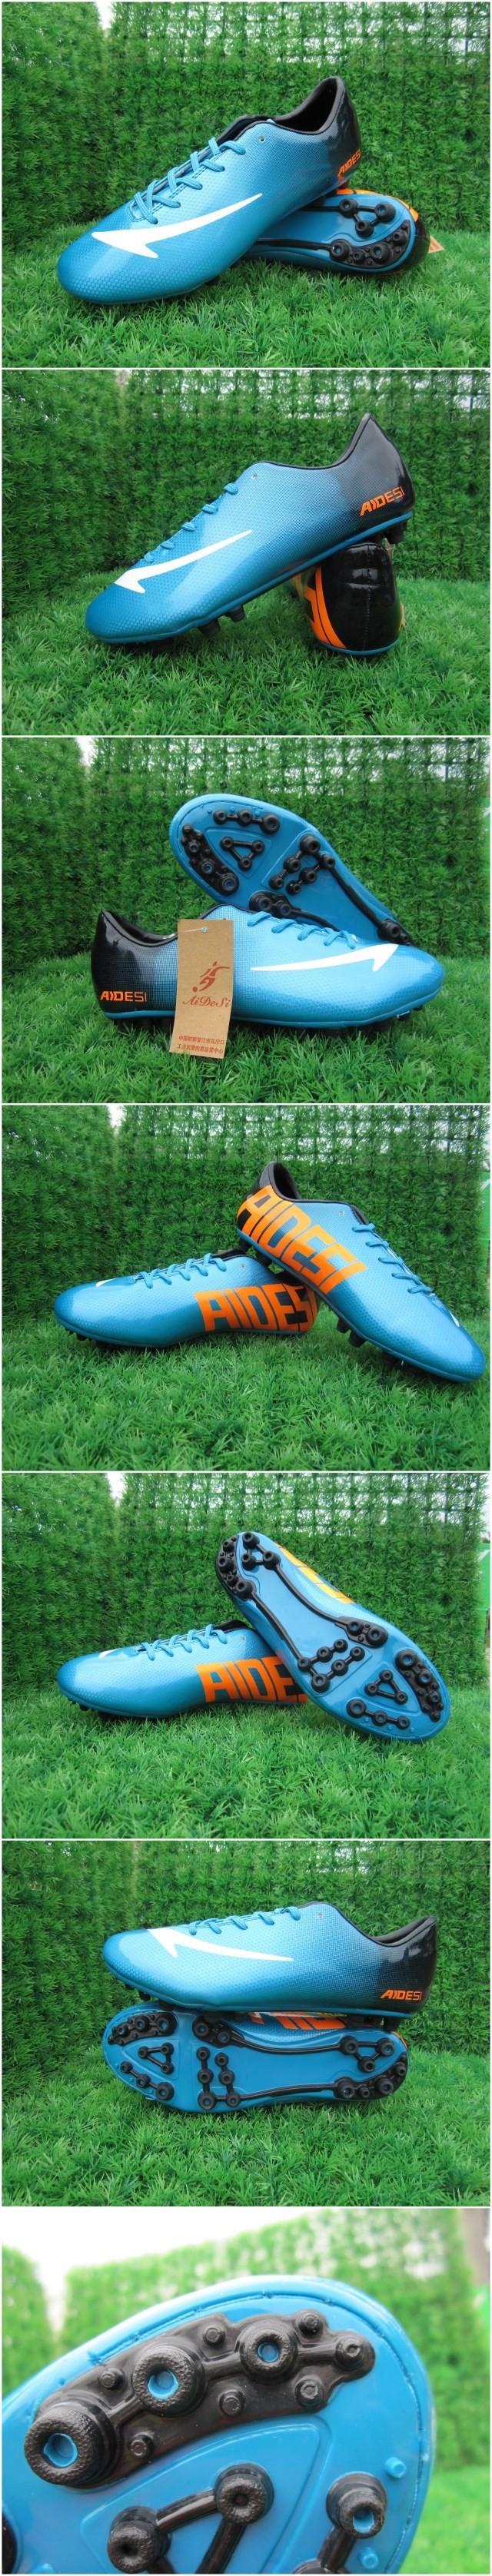 JUNIOR KIDS Football Soccer Boots Cleats